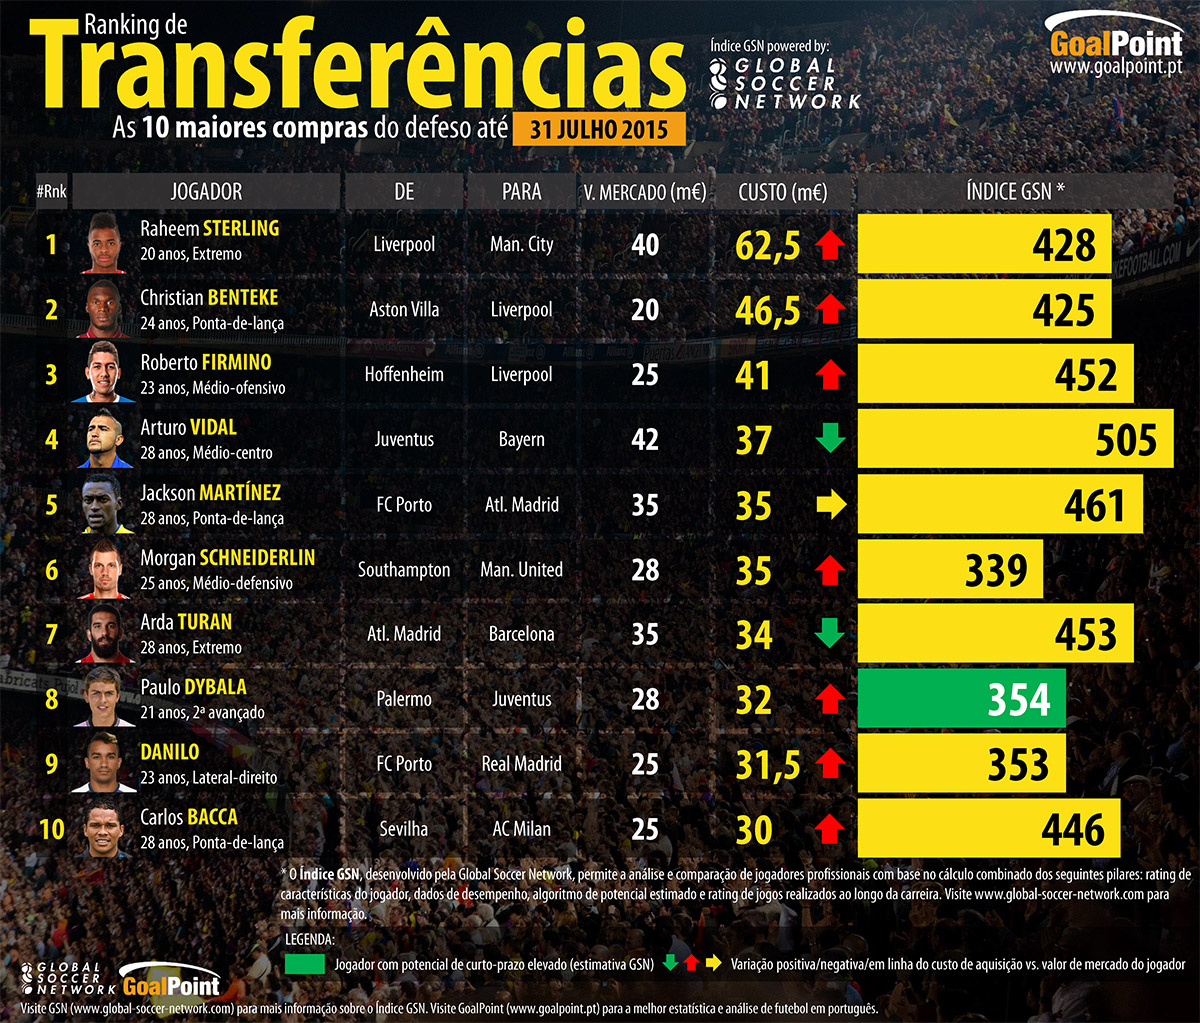 As 10 maiores transferências até Julho de 2015